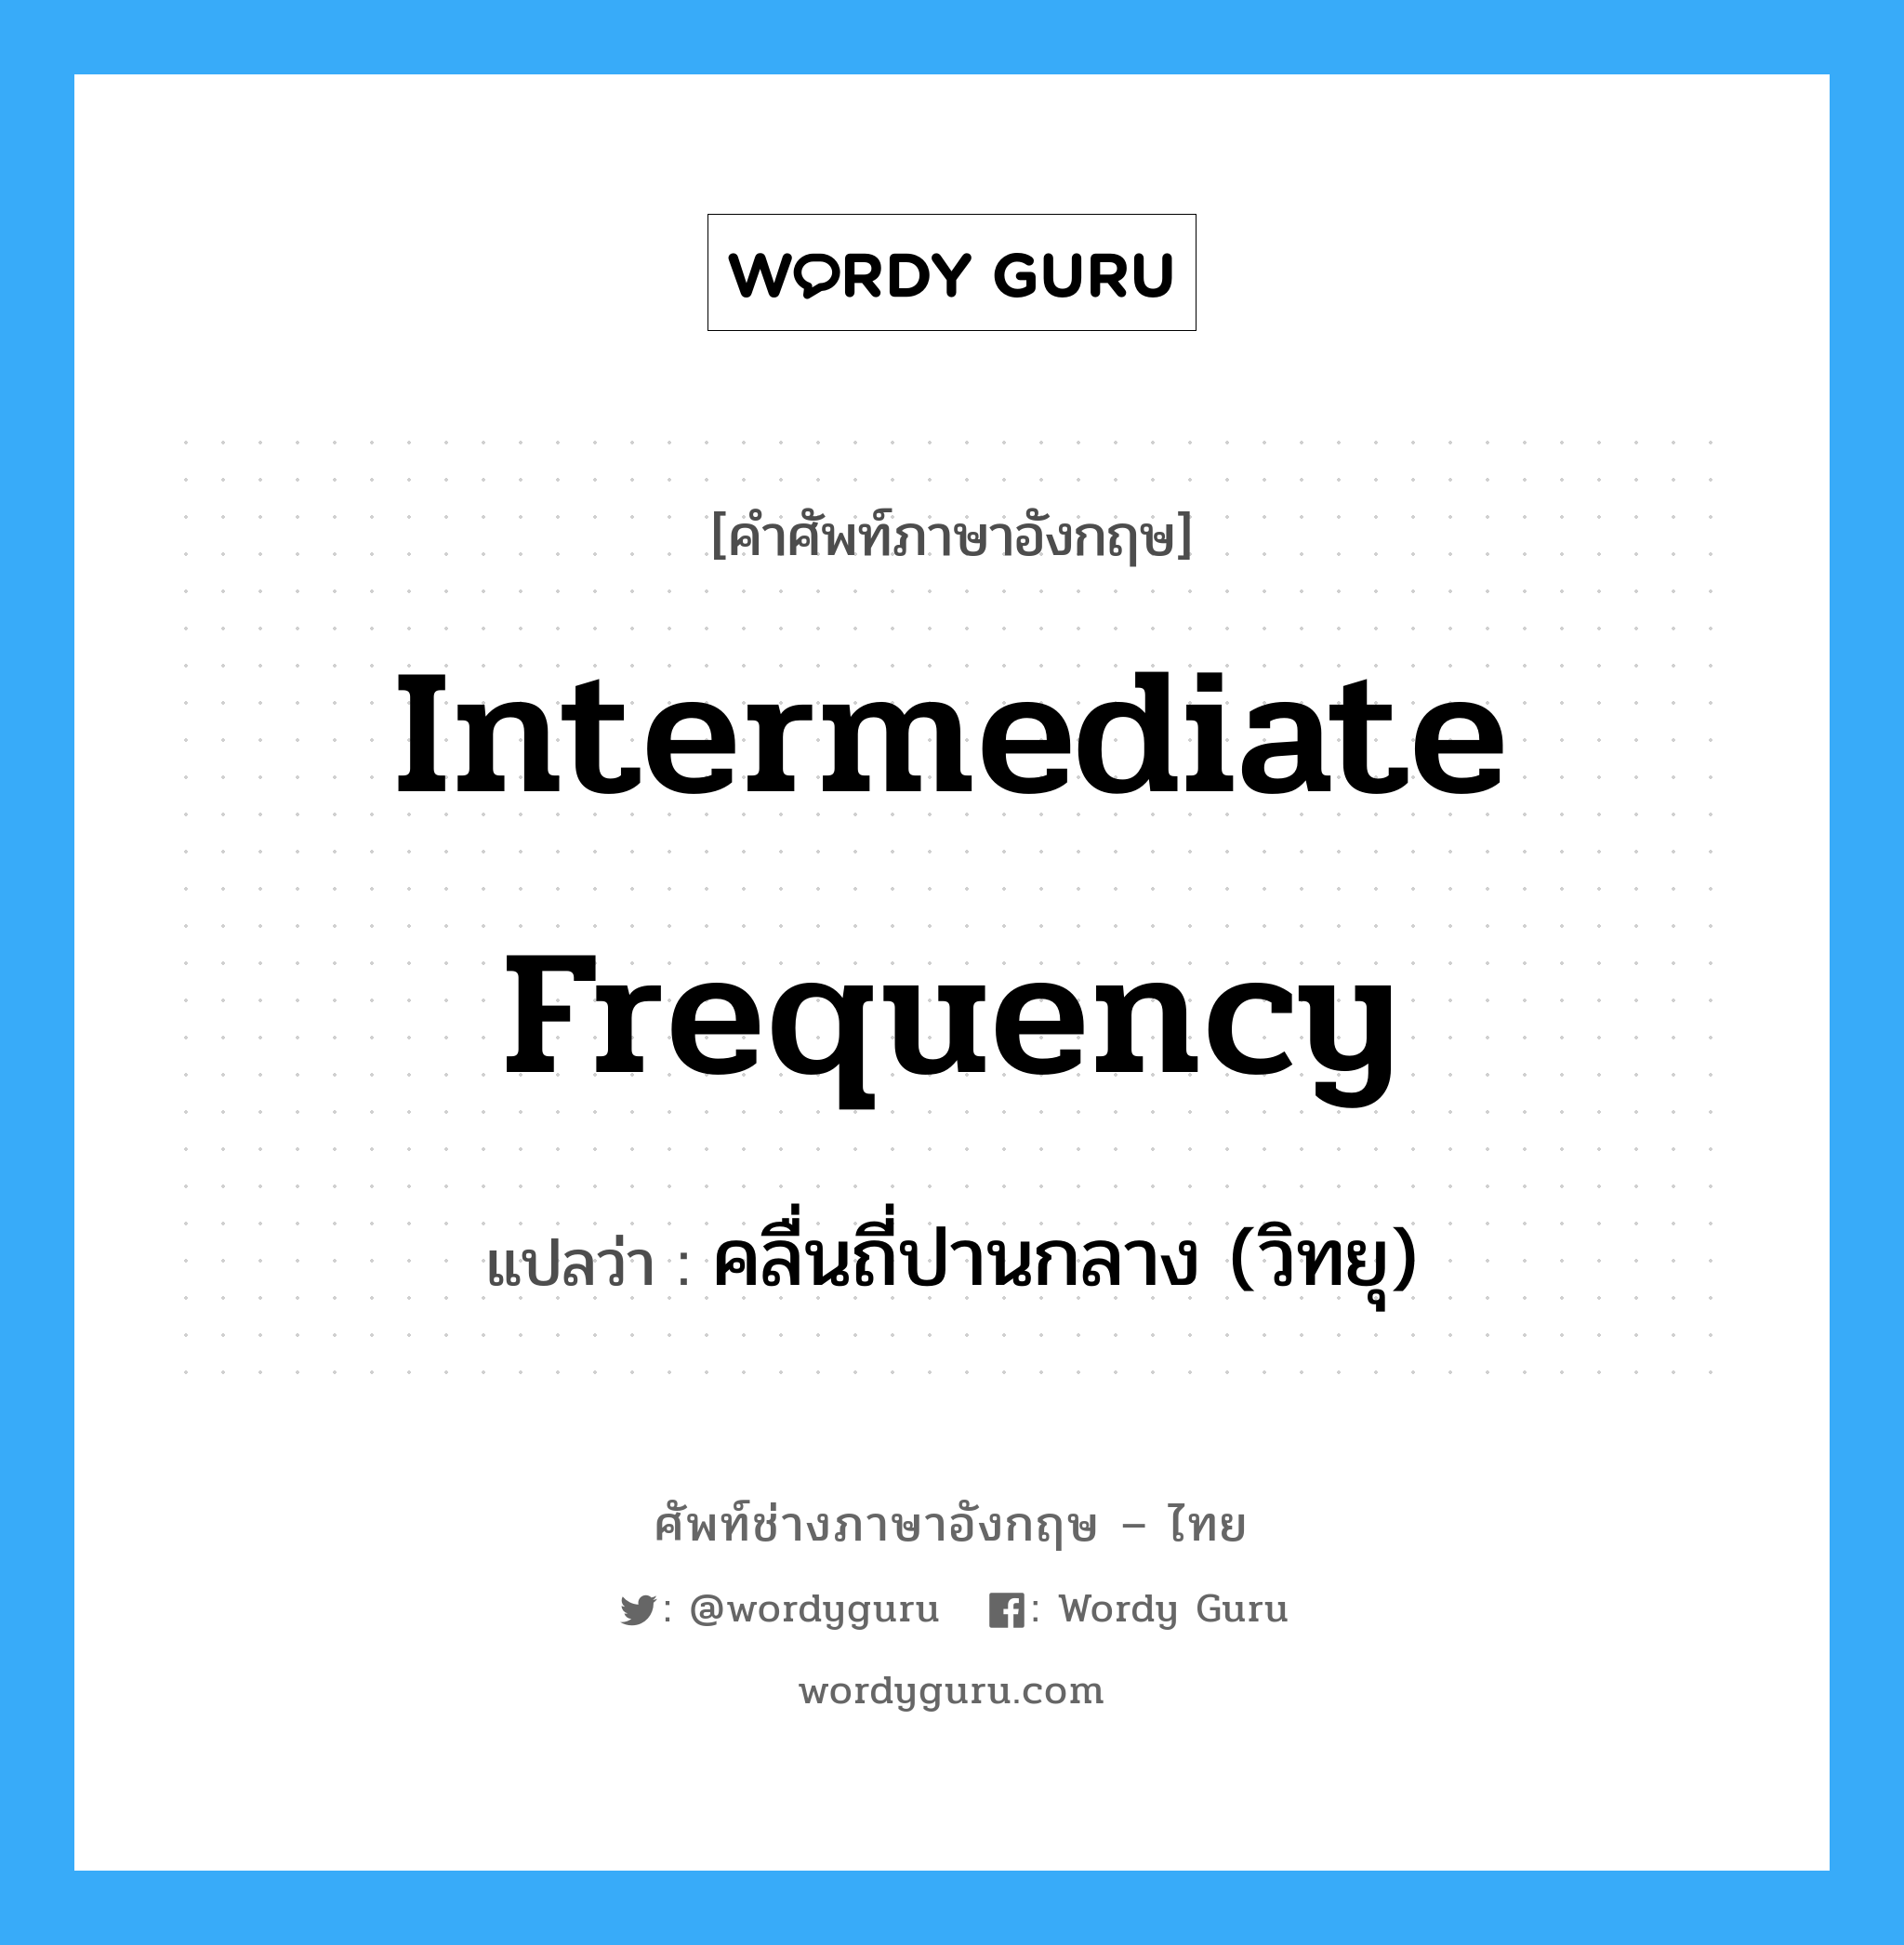 คลื่นถี่ปานกลาง (วิทยุ) ภาษาอังกฤษ?, คำศัพท์ช่างภาษาอังกฤษ - ไทย คลื่นถี่ปานกลาง (วิทยุ) คำศัพท์ภาษาอังกฤษ คลื่นถี่ปานกลาง (วิทยุ) แปลว่า intermediate frequency